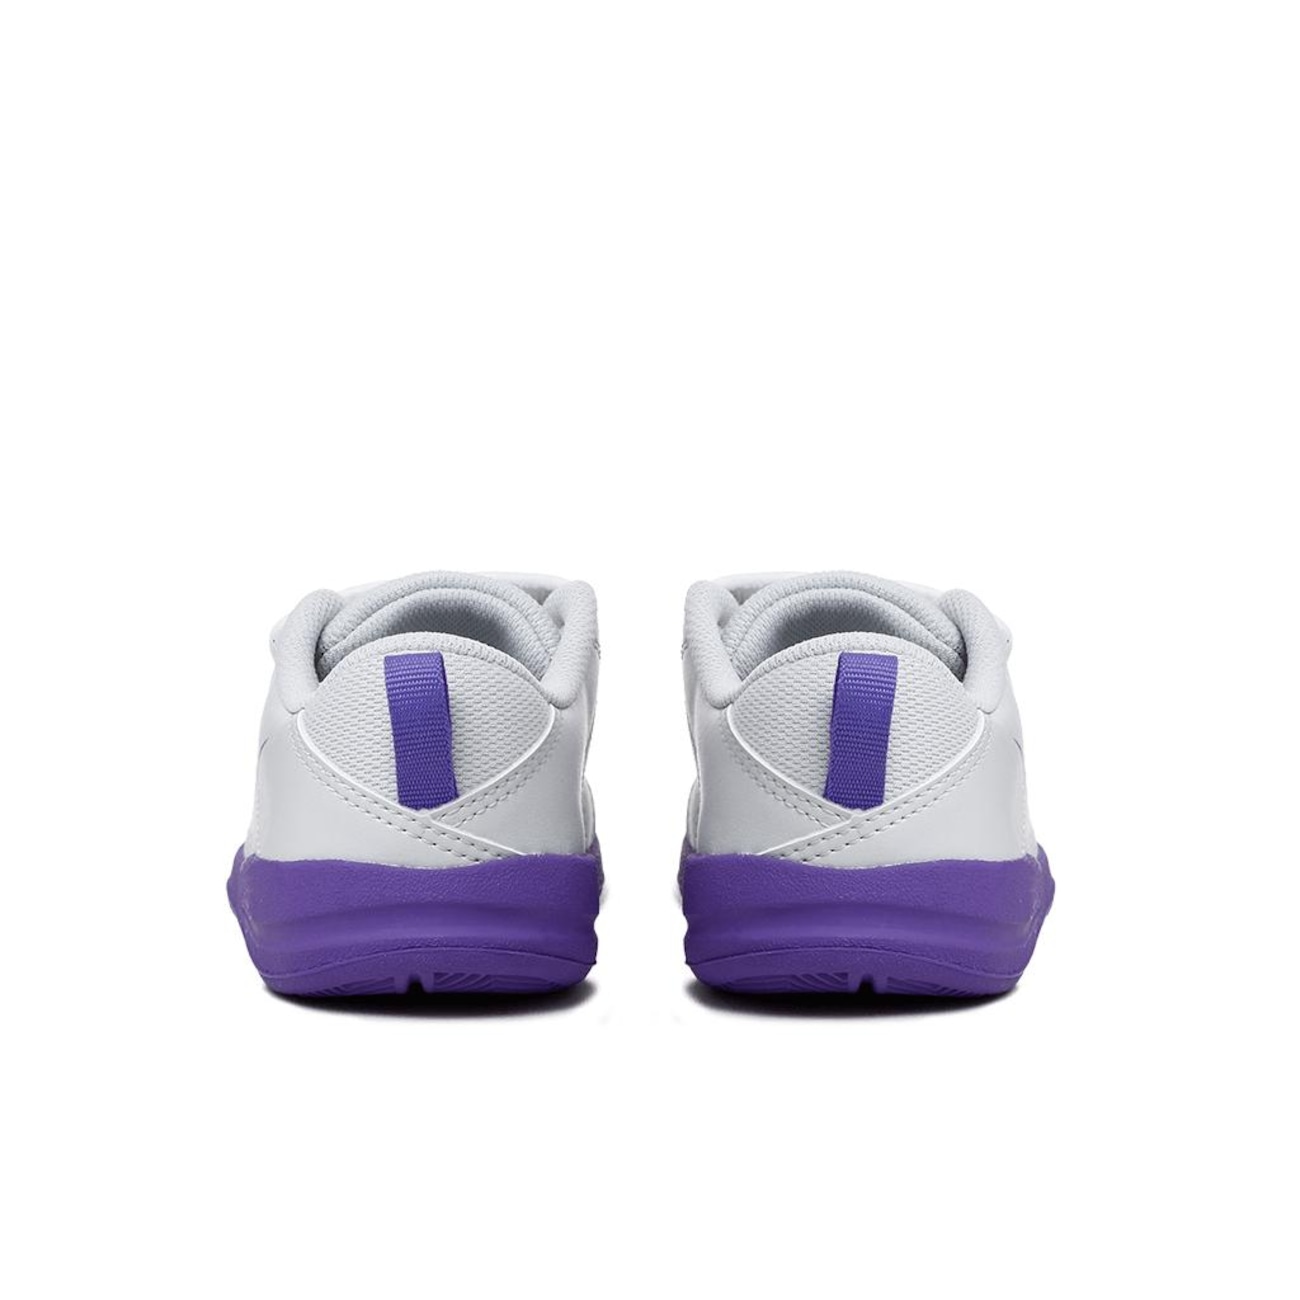 Tênis Nike Pico LT Infantil - Foto 6